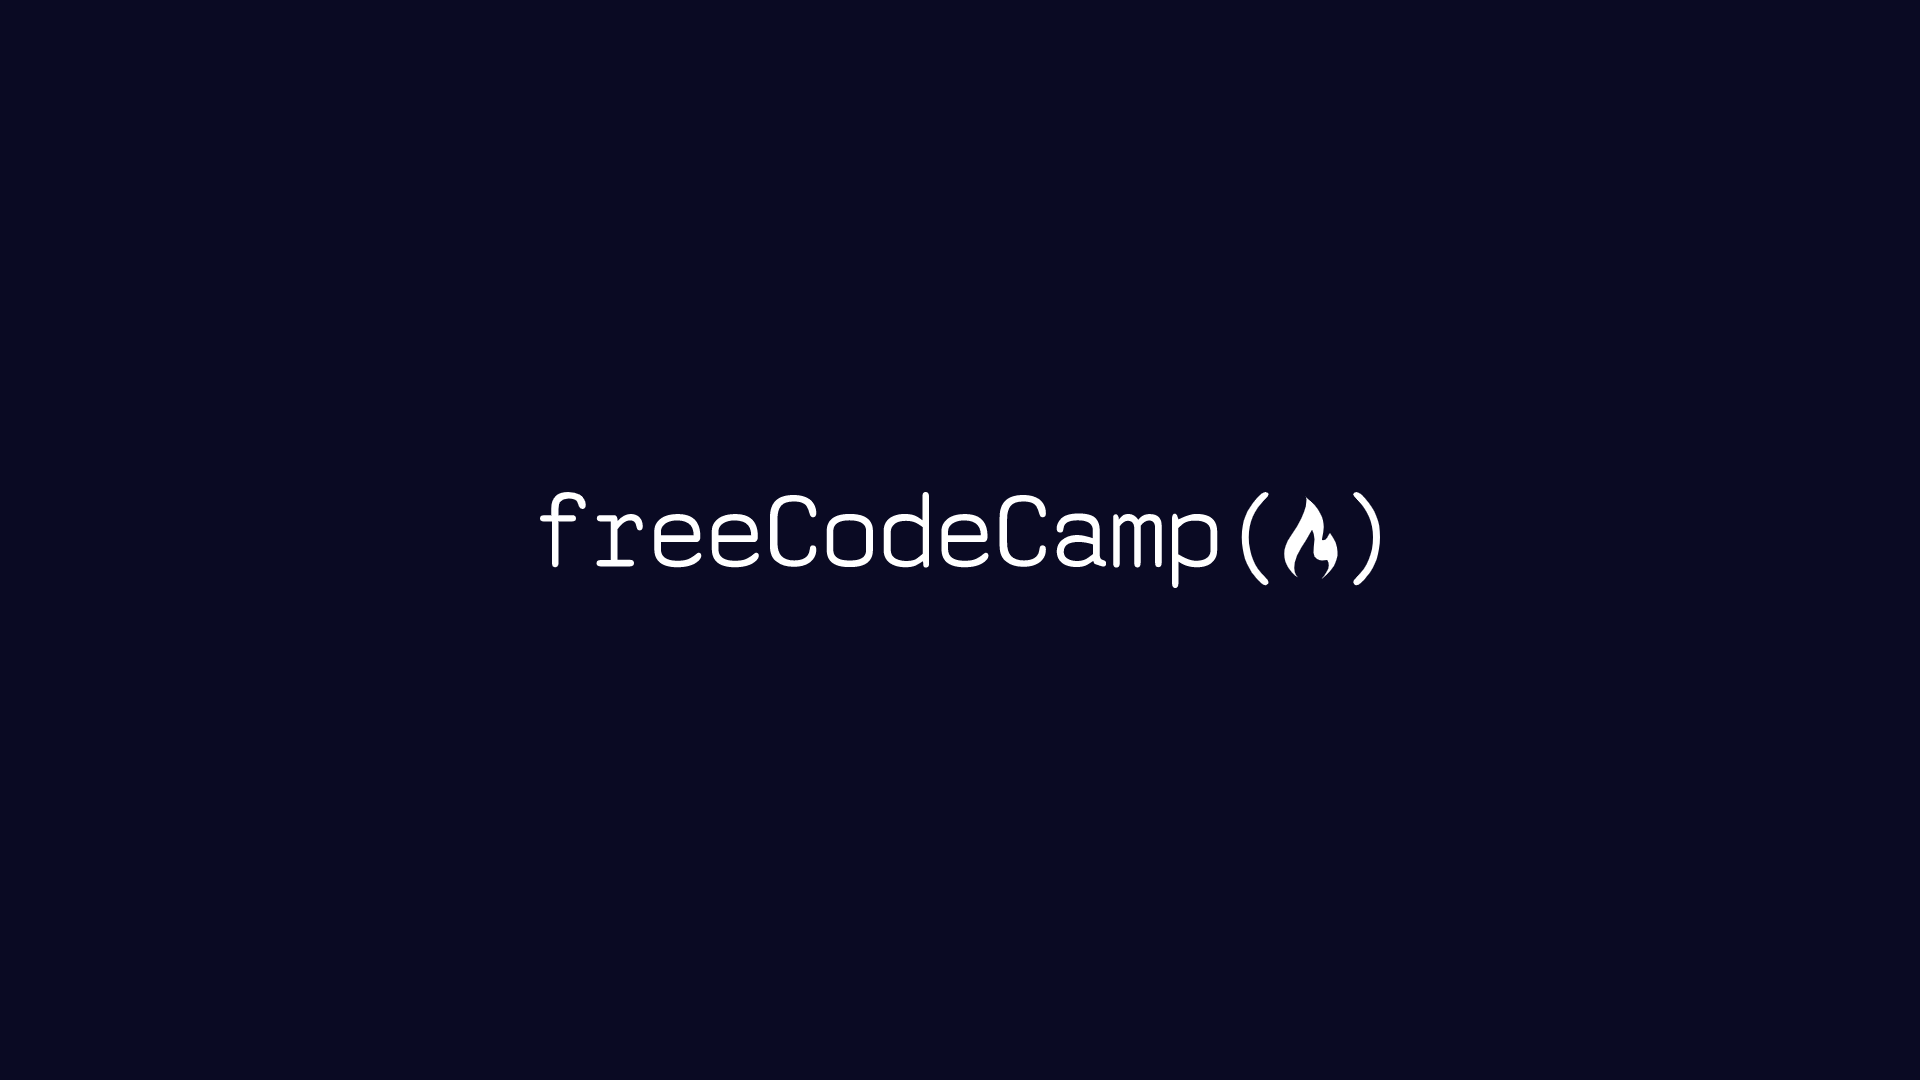 Logotipo de freeCodeCamp.org